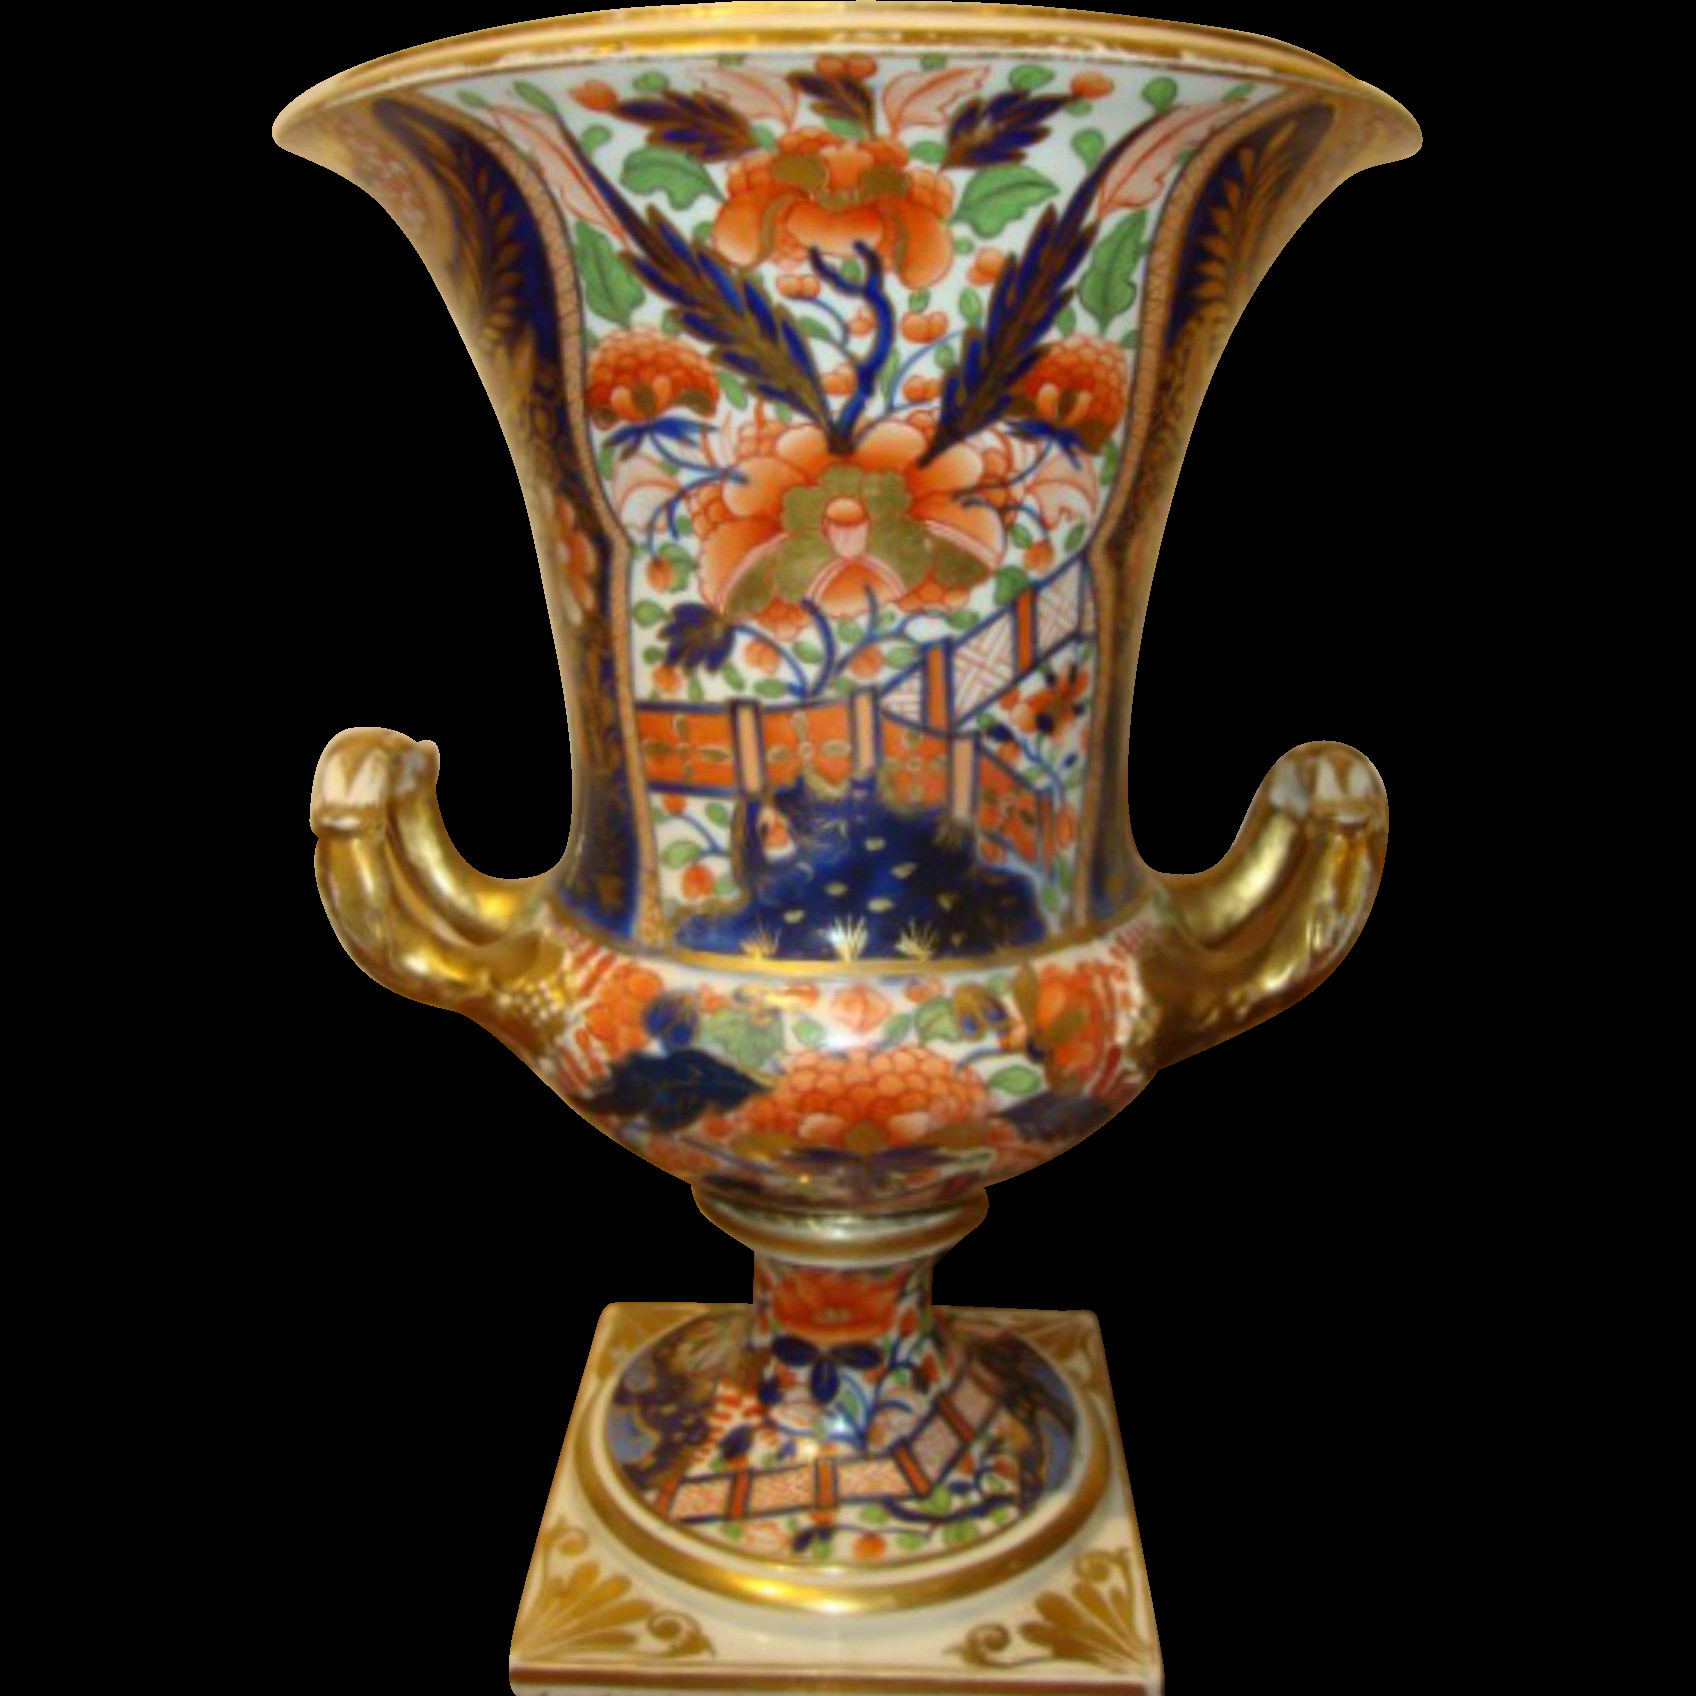 Lime Green Ceramic Vase Of Antique English Porcelain Campagna Shape Vase Derby Porcelain for Antique English Porcelain Campagna Shape Vase Derby Porcelain